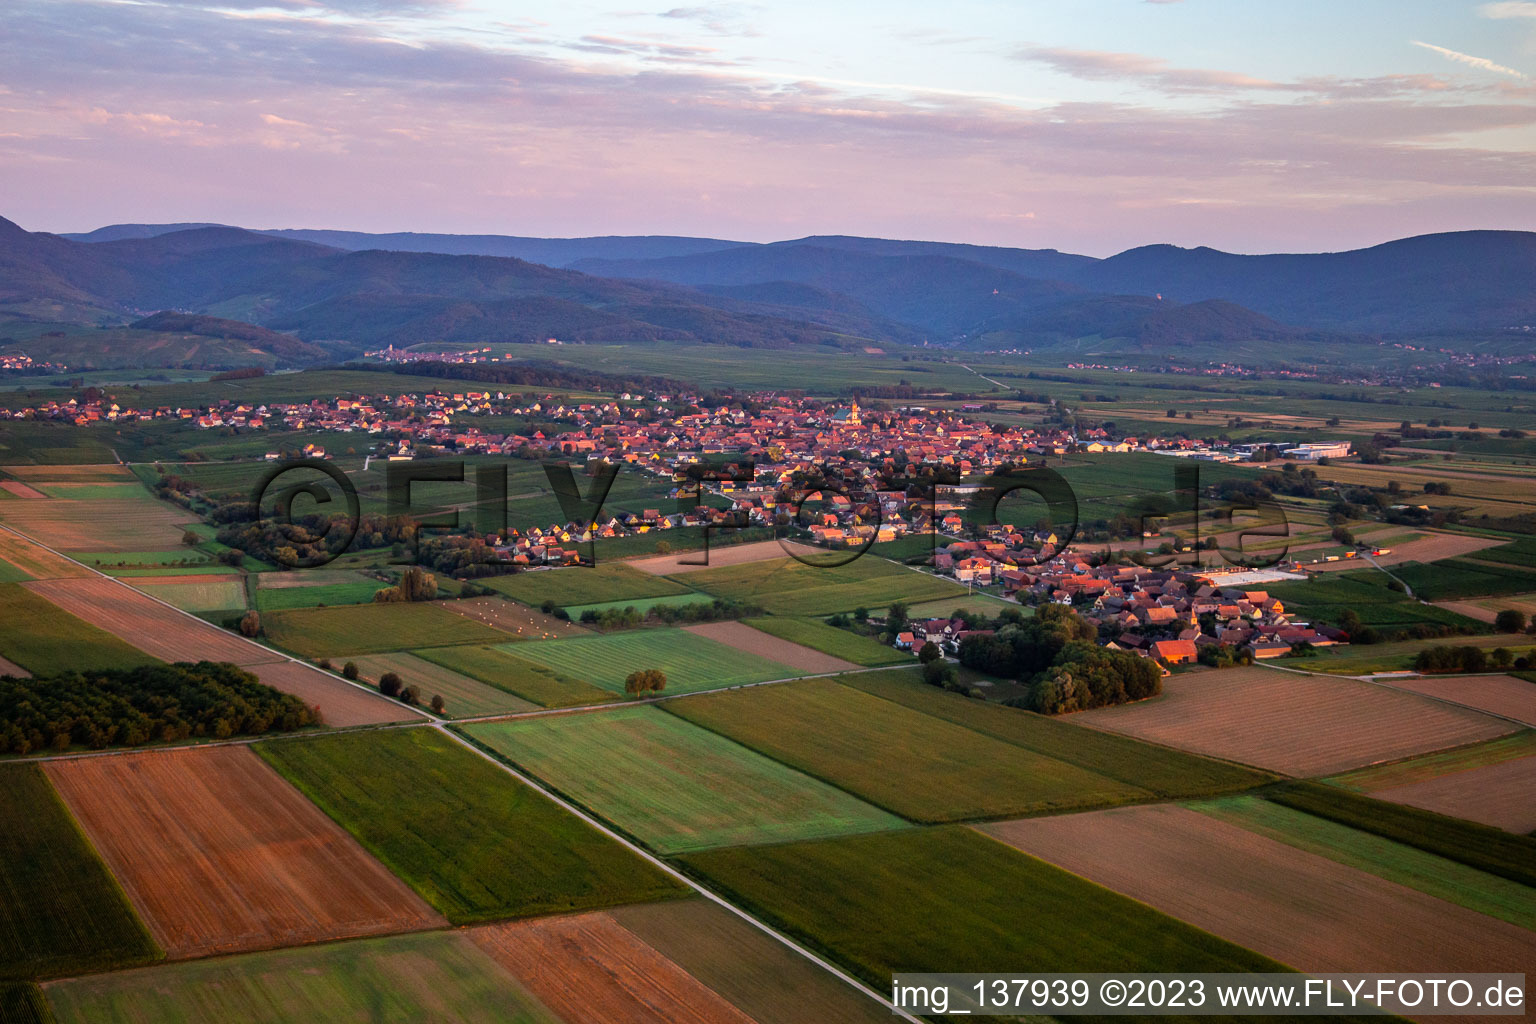 Vue aérienne de Le matin du sud-est à Epfig dans le département Bas Rhin, France